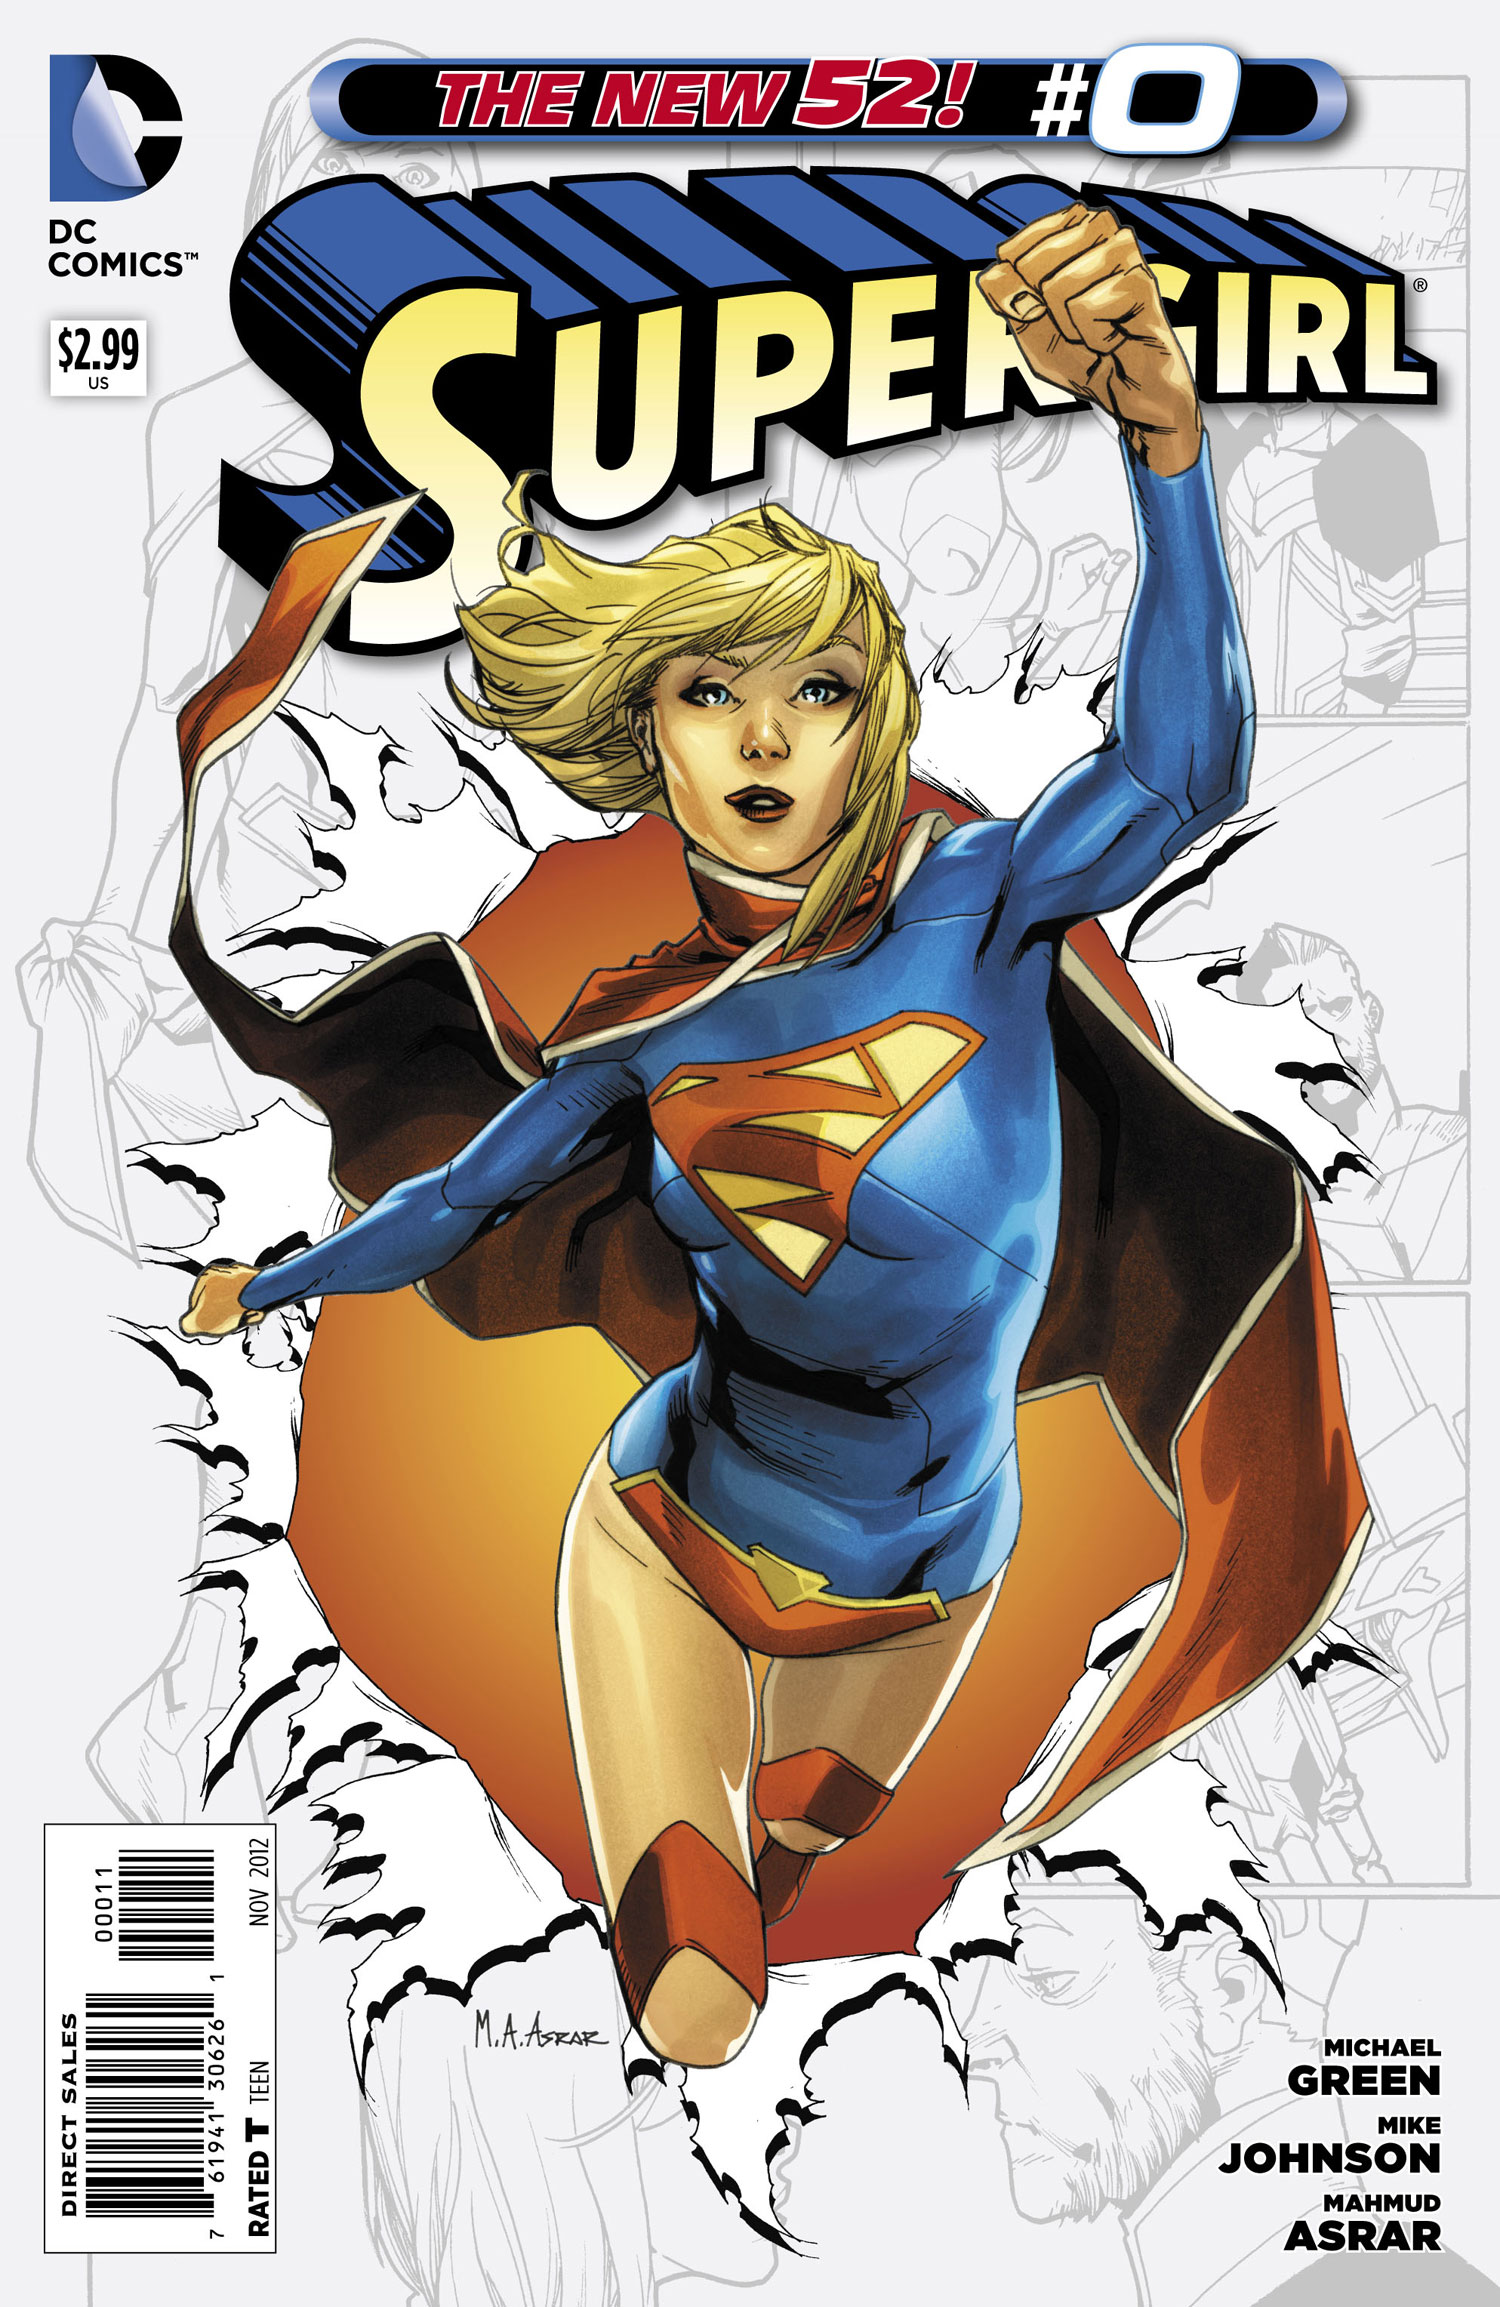 Supergirl Vol. 6 #0